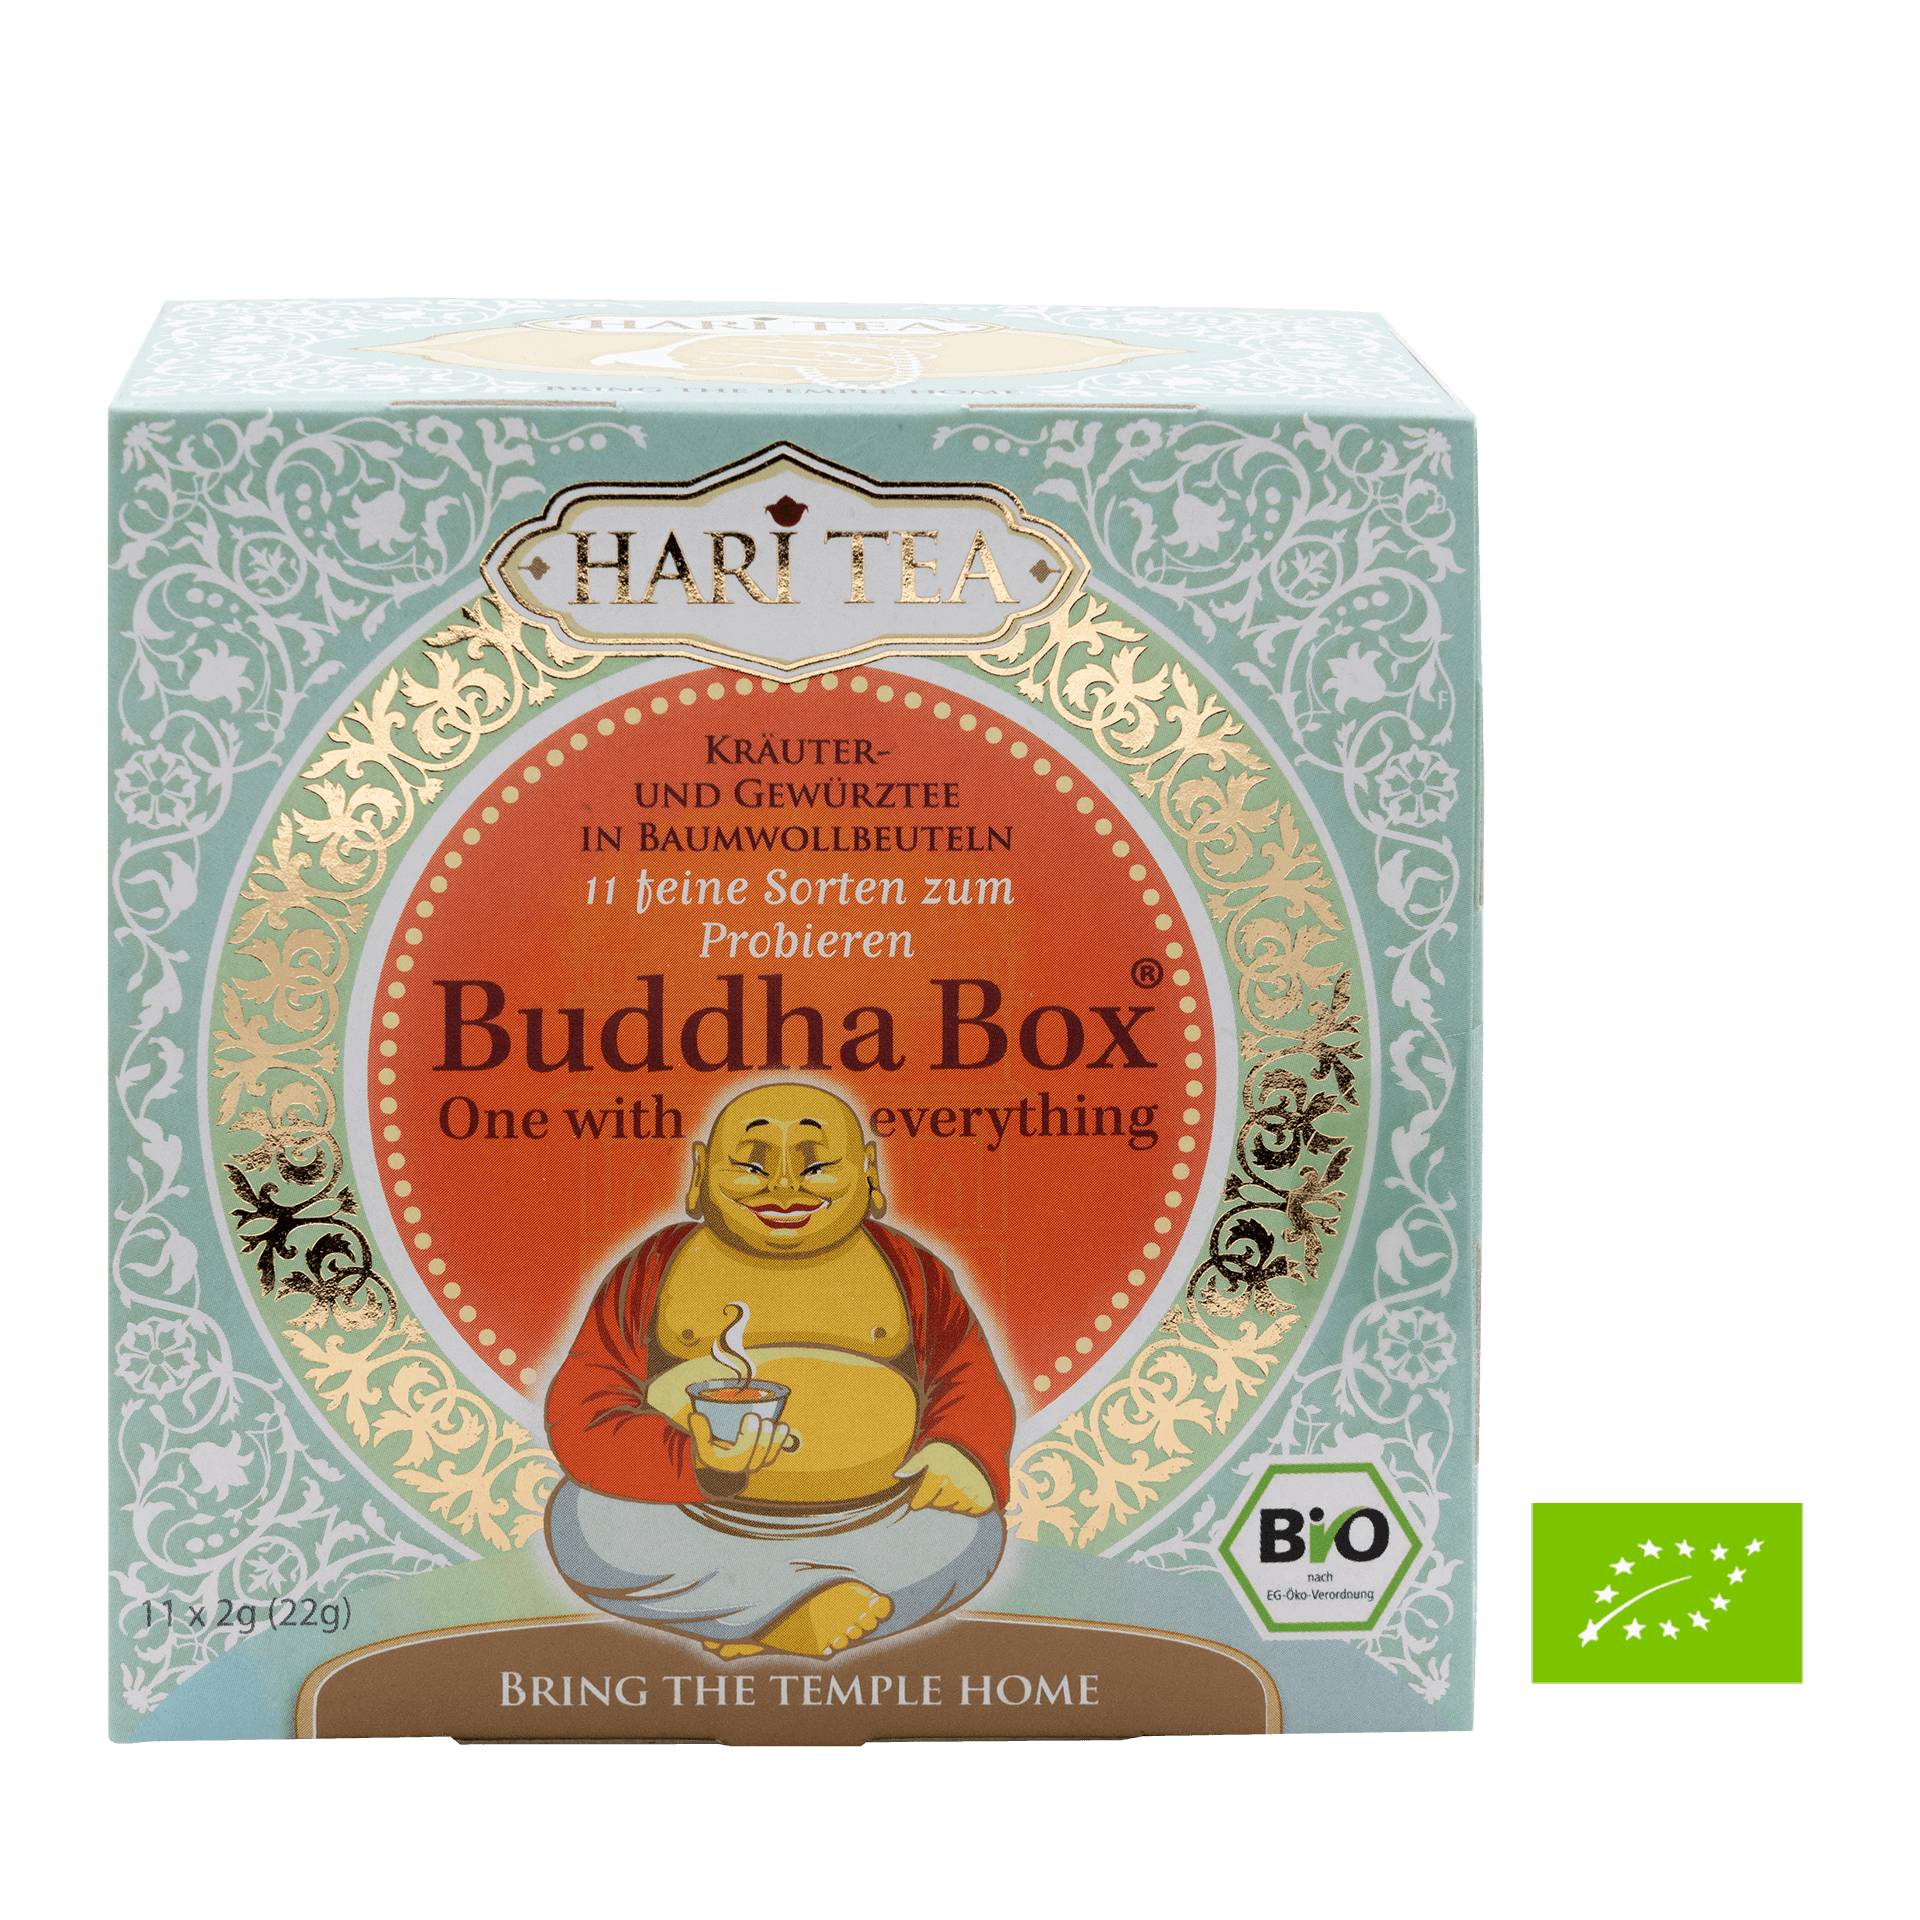 Buddha Box Hari Tea BIO 11 Btl. á 2 g  - 11 feine Sorten - Bio-Kräuter und Gewürztee - Geschenkbox - Vegan - Quintessence von Hari Tea